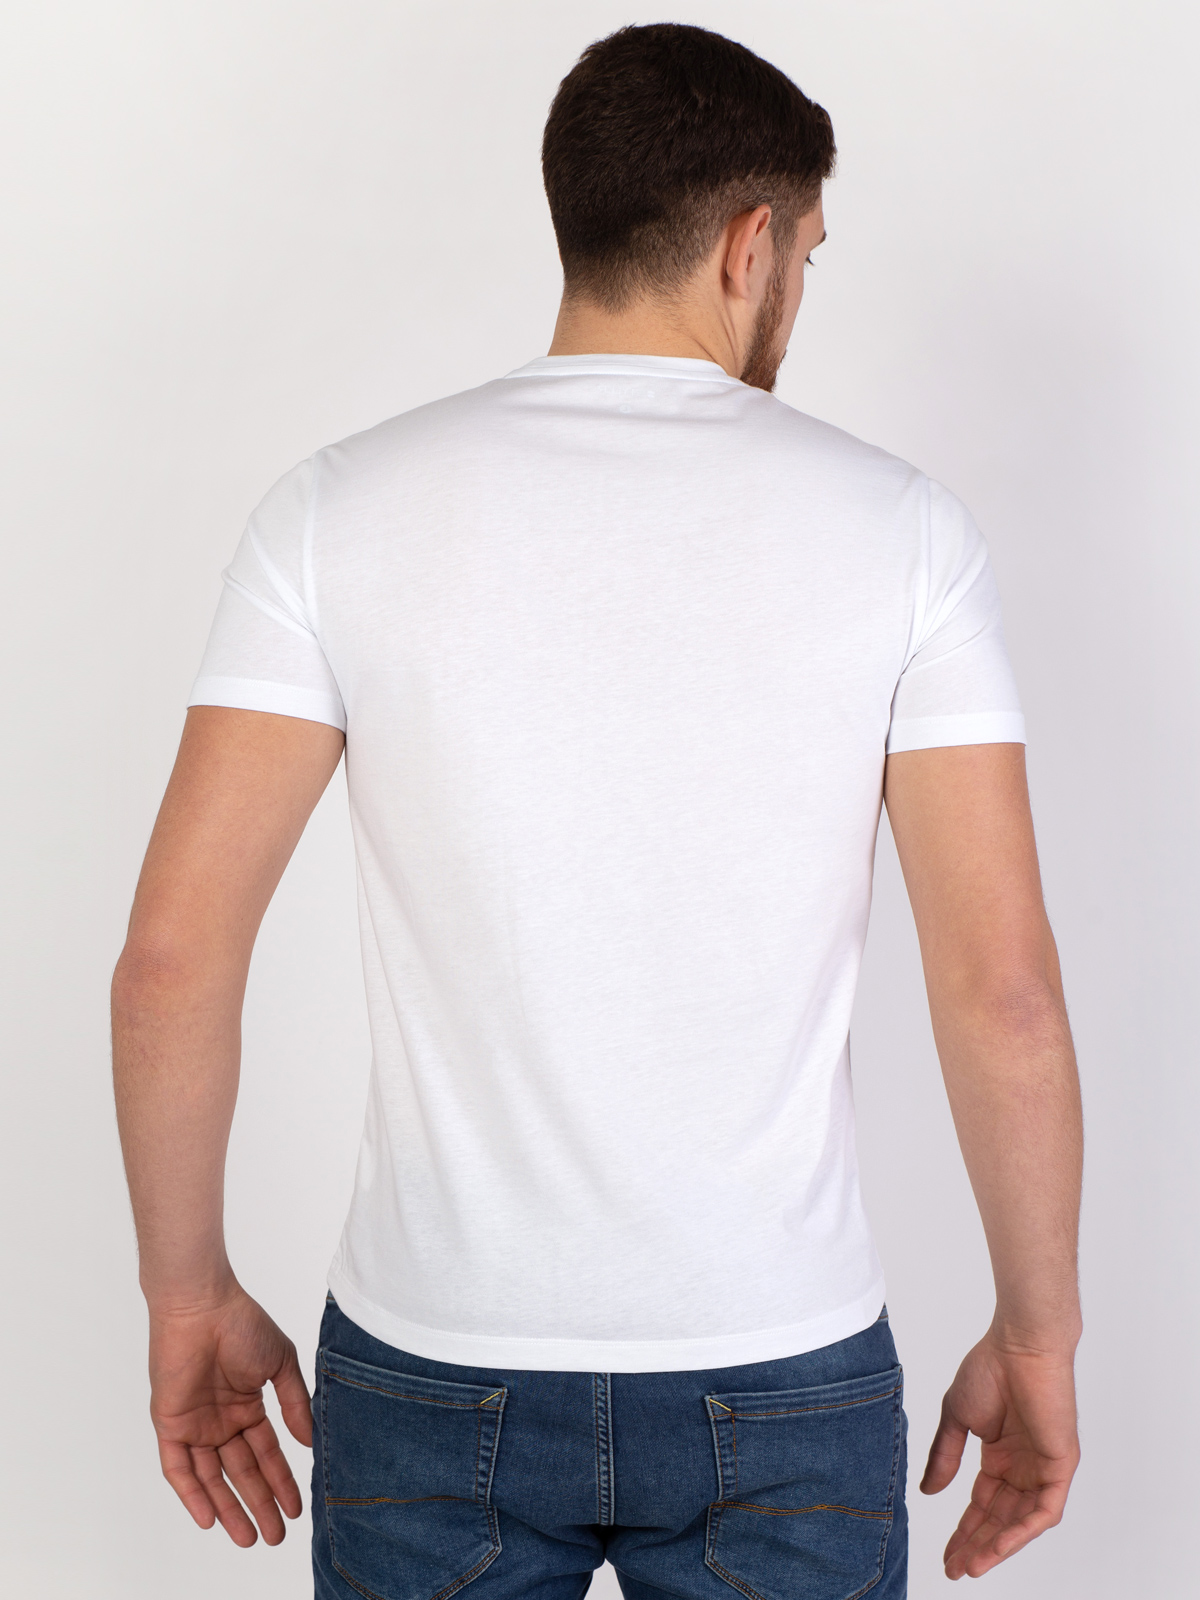 Λευκό μπλουζάκι με χρωματιστή στάμπα κηρ - 96402 € 16.31 img3